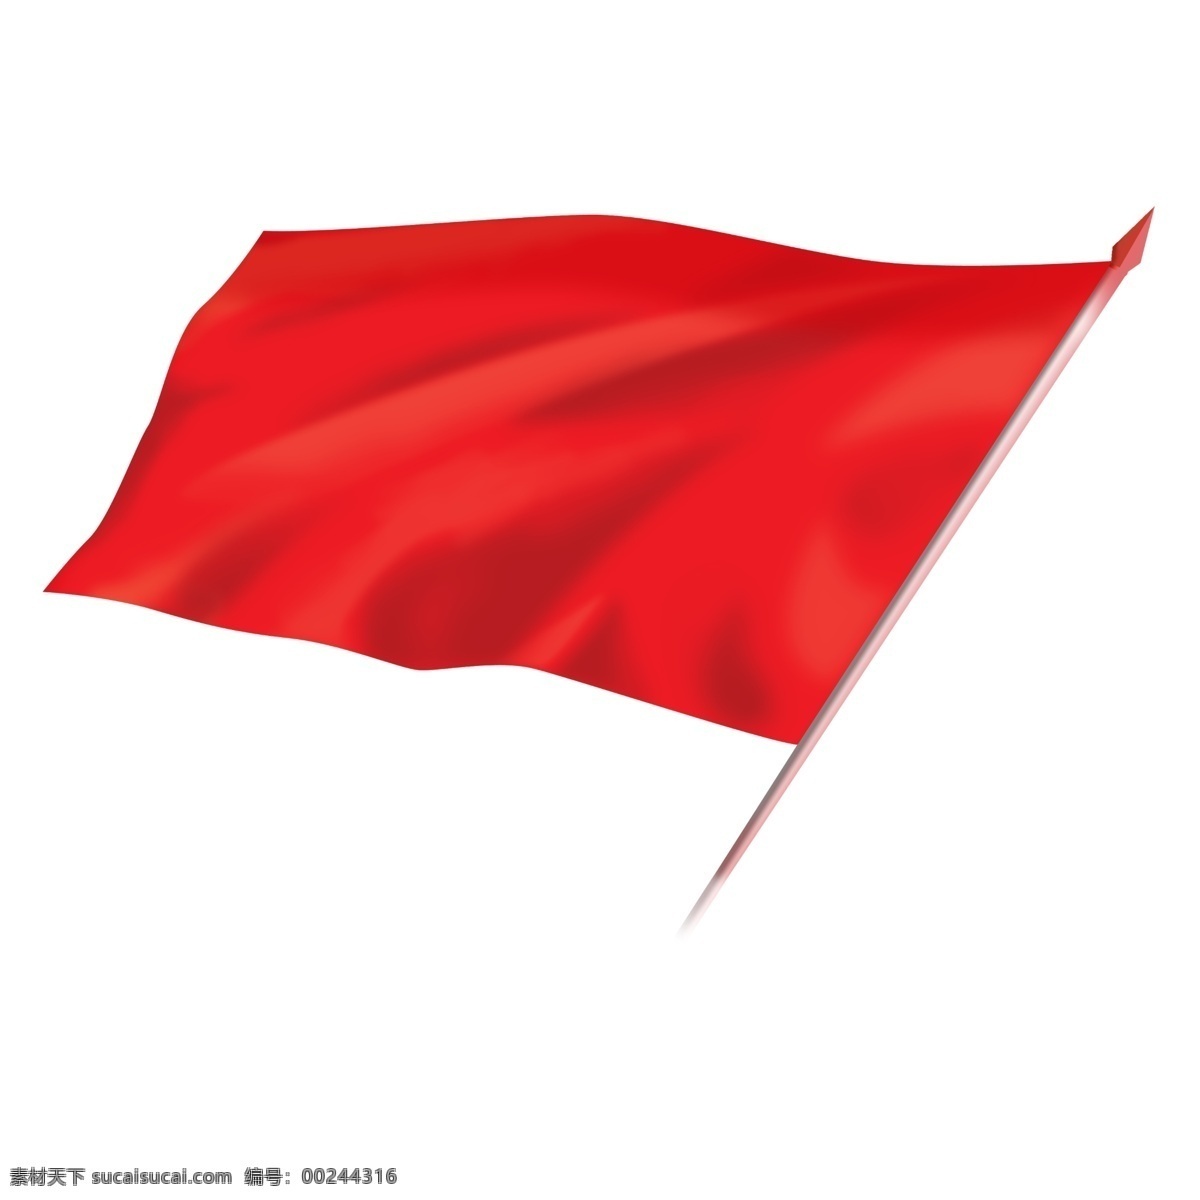 红色 旗帜 飘扬 免 抠 中国红 迎风 红旗 旗杆 免抠 红色的旗子 飘扬的红旗 大红